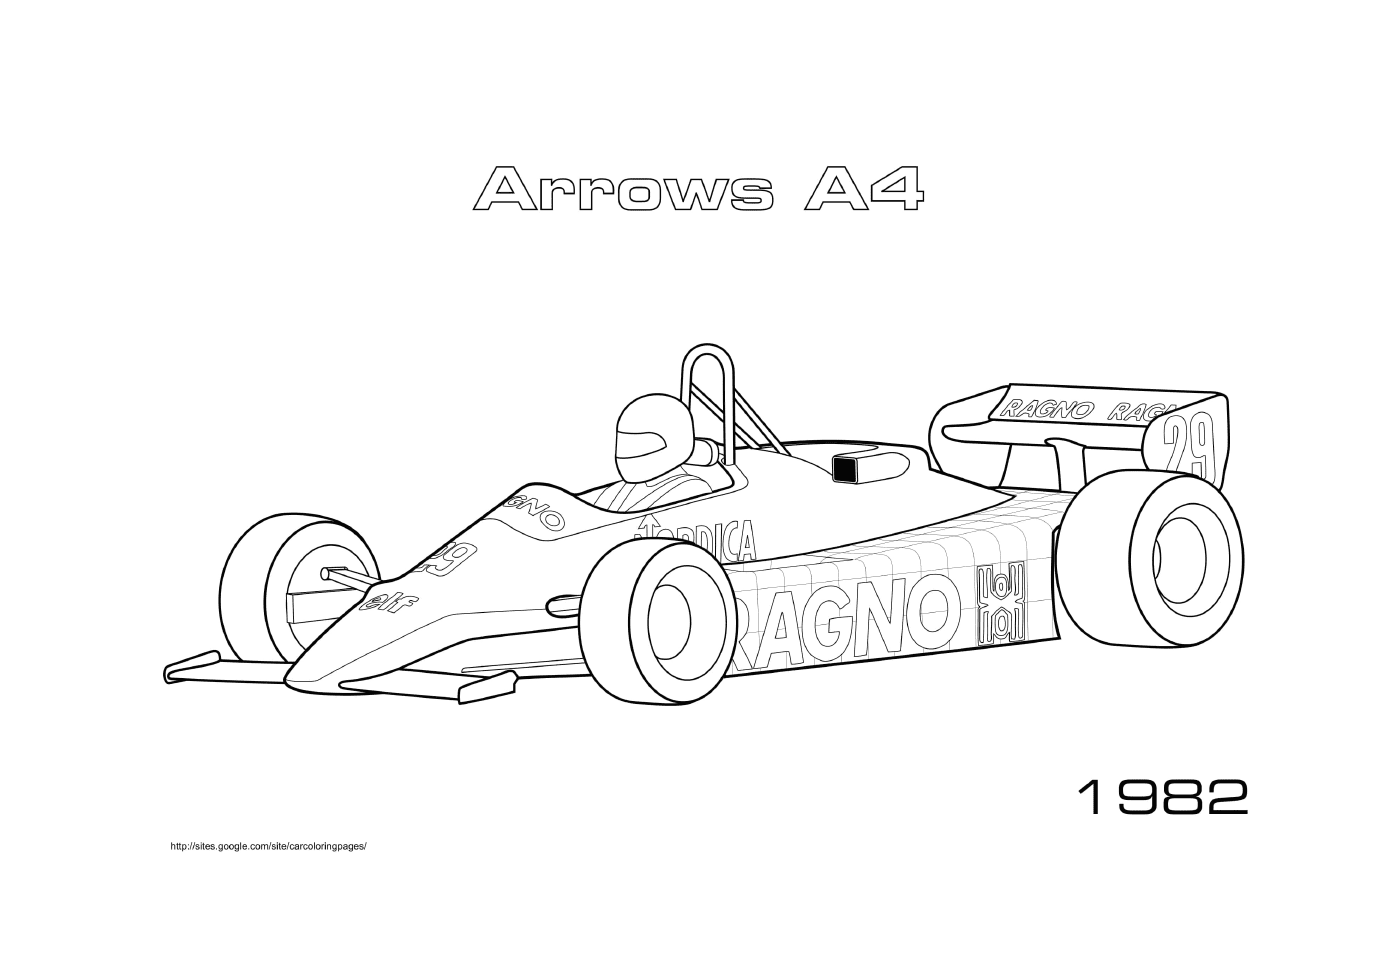  Arrows A4 of 1982 